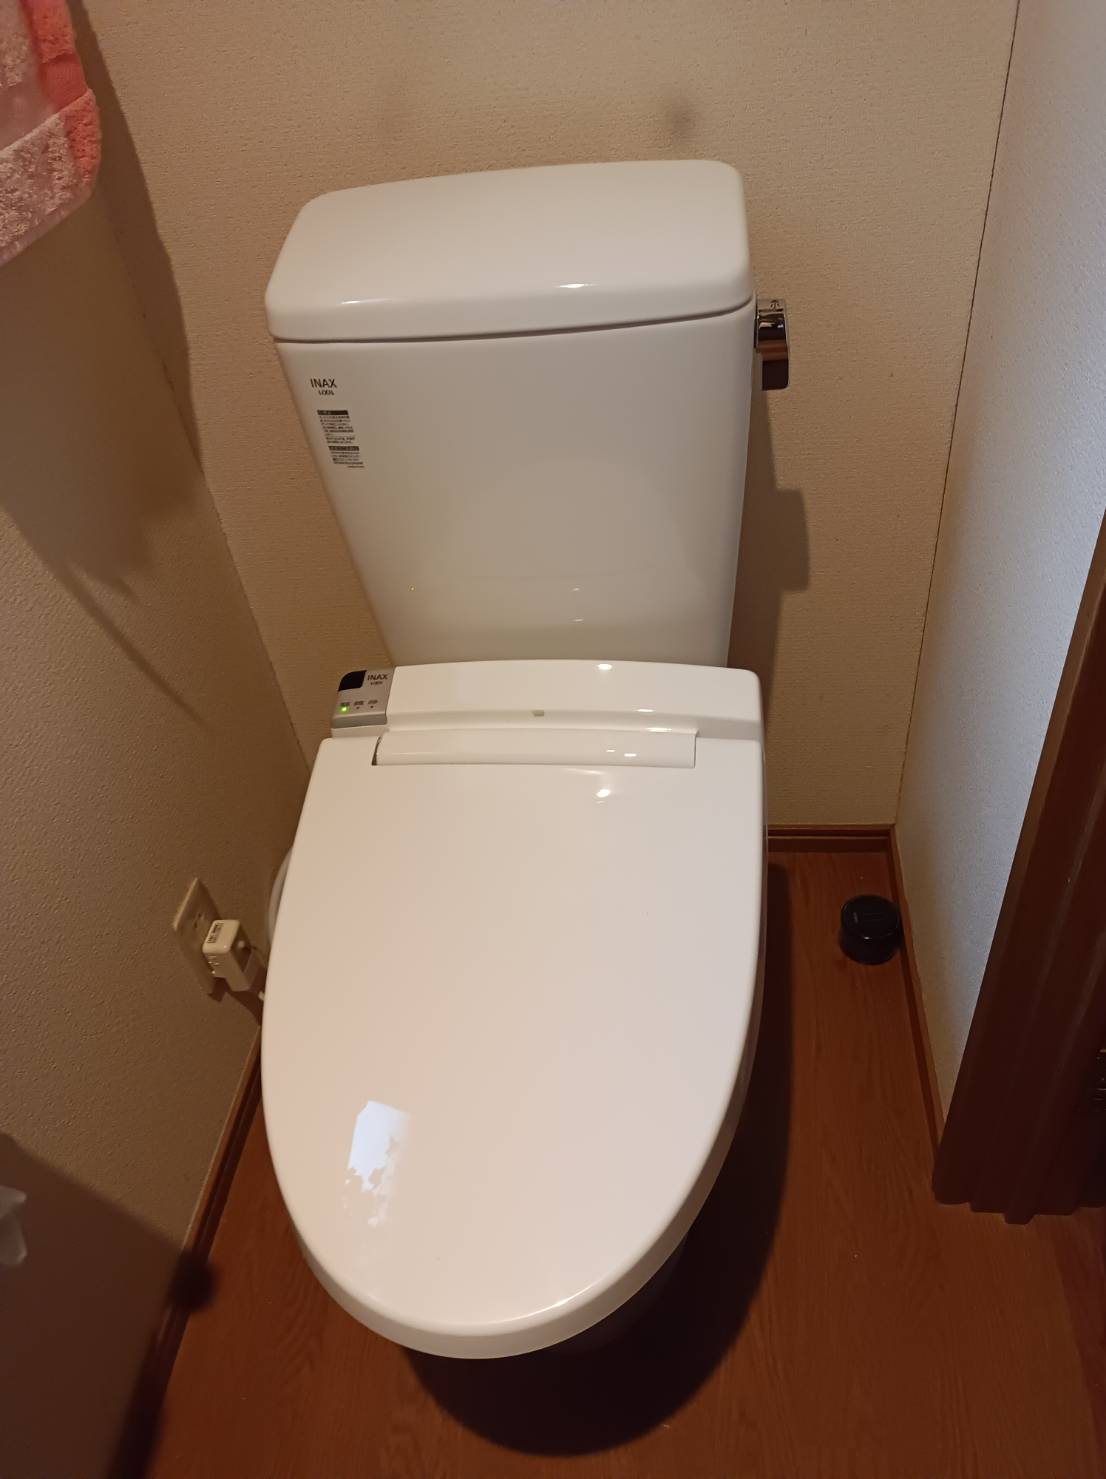 【東京都葛飾区】Y様邸トイレ交換工事が完了しました。リクシル アメージュZ 画像